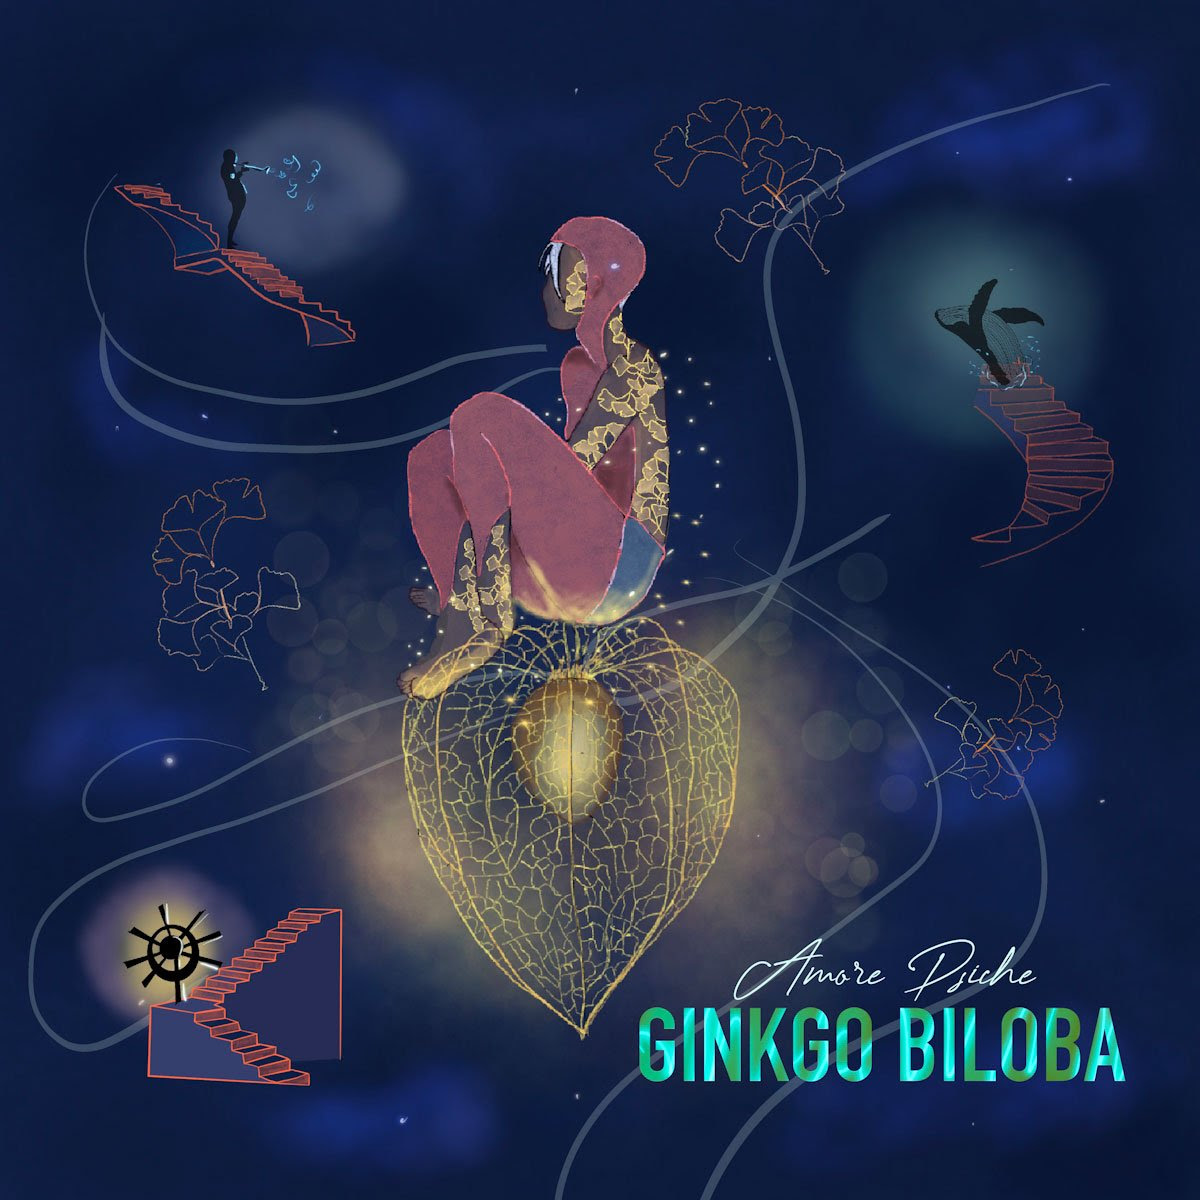 AMORE PSICHE: disponibile in digitale e in formato fisico “GINKGO BILOBA” il nuovo disco